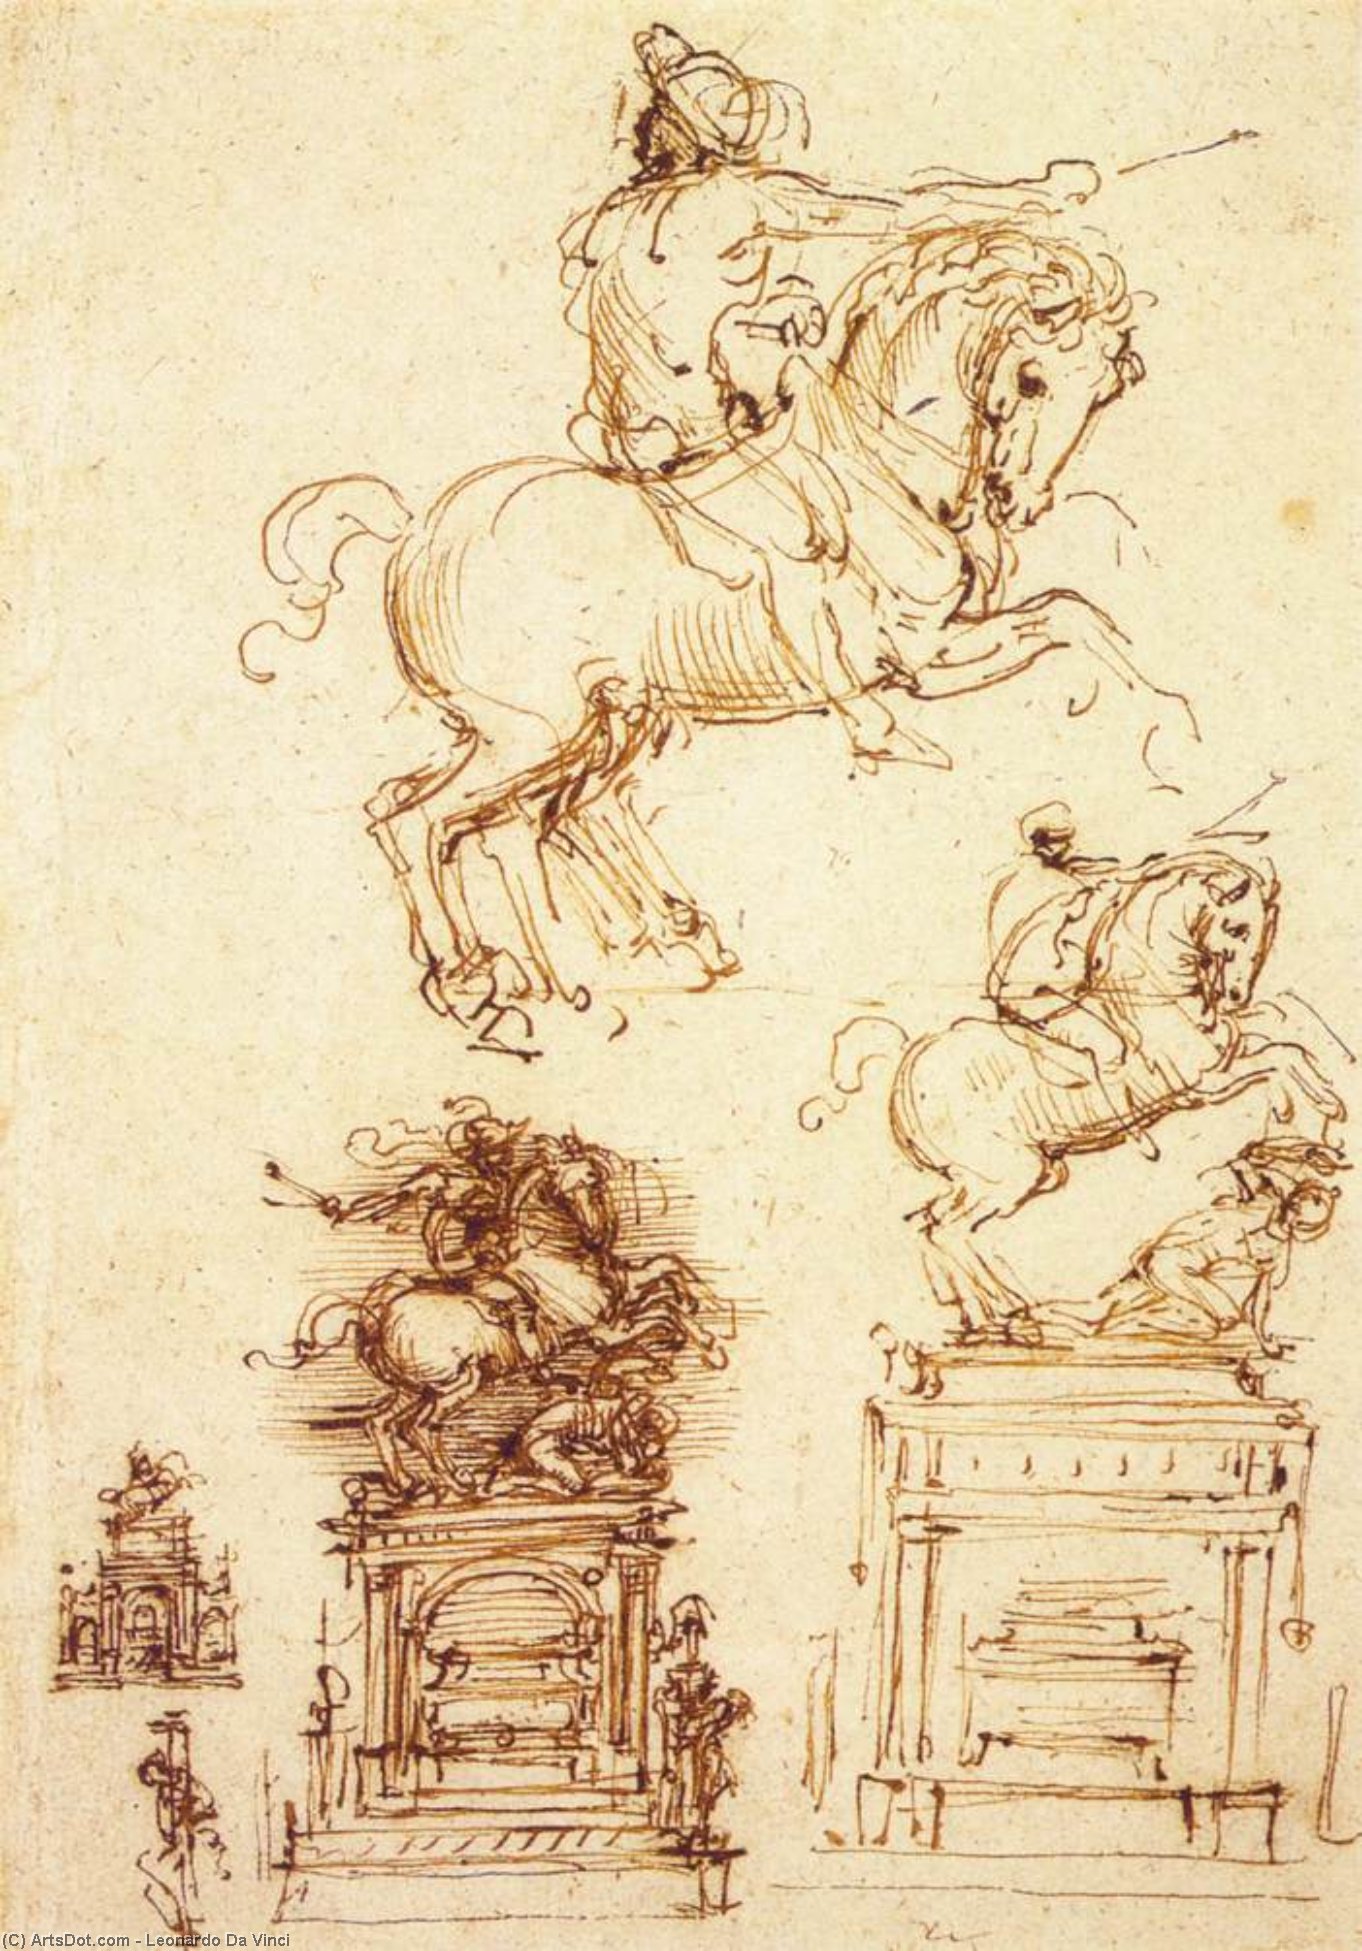 WikiOO.org - Encyclopedia of Fine Arts - Maleri, Artwork Leonardo Da Vinci - Study for the Trivulzio Equestrian Monument